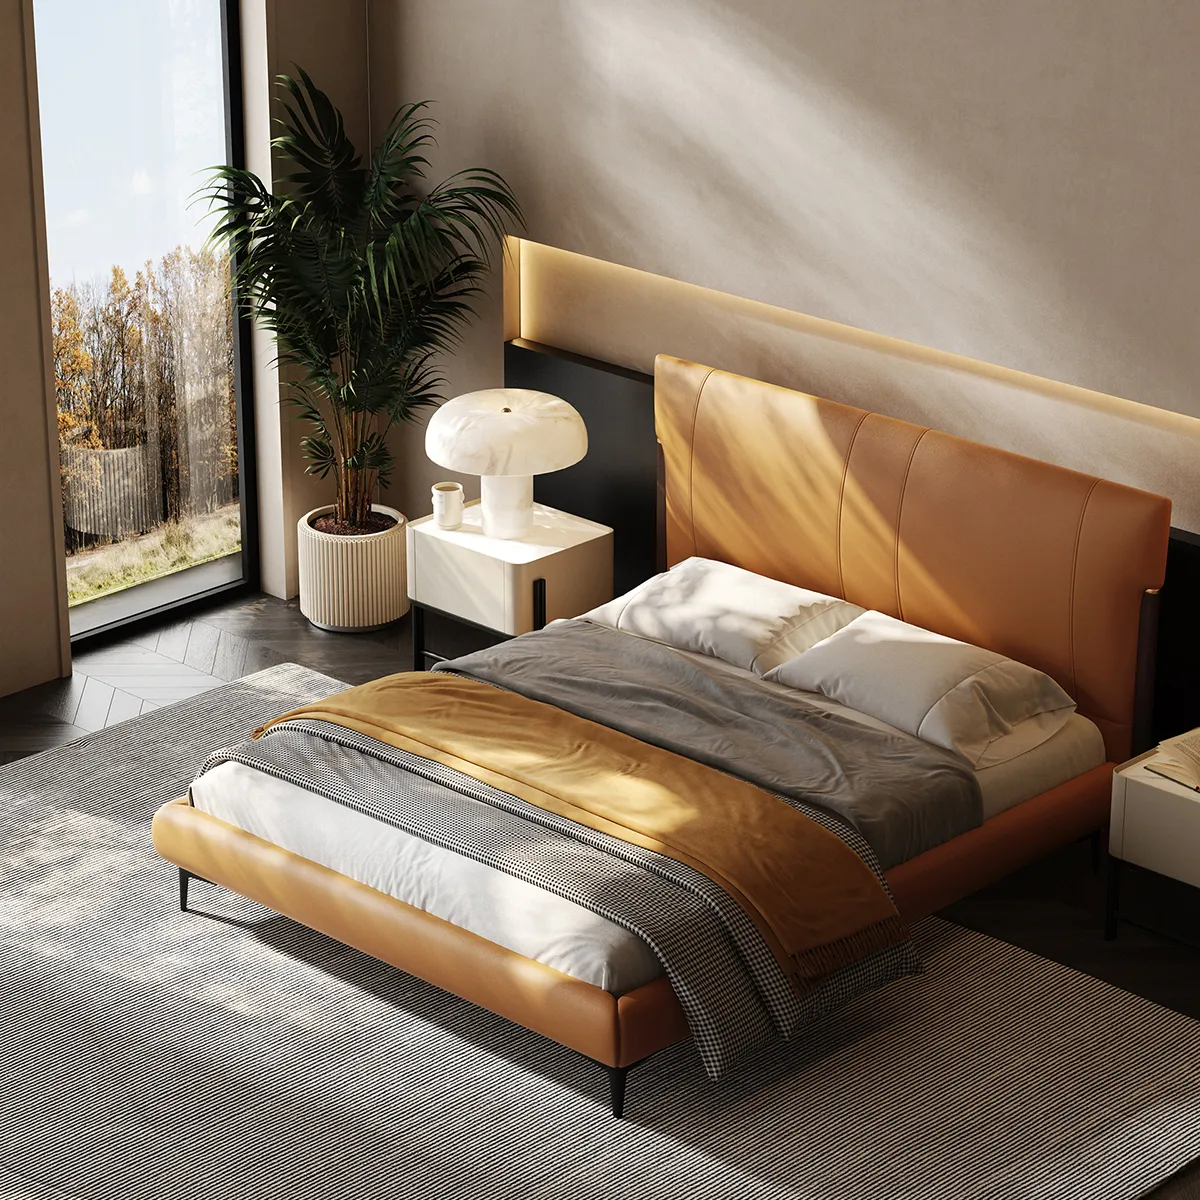 ユニークなデザインのキングサイズベッドモダンなヨーロッパスタイルの革製ベッド高品質の柔らかい生地クイーンサイズのベッド高級ベッドルーム家具